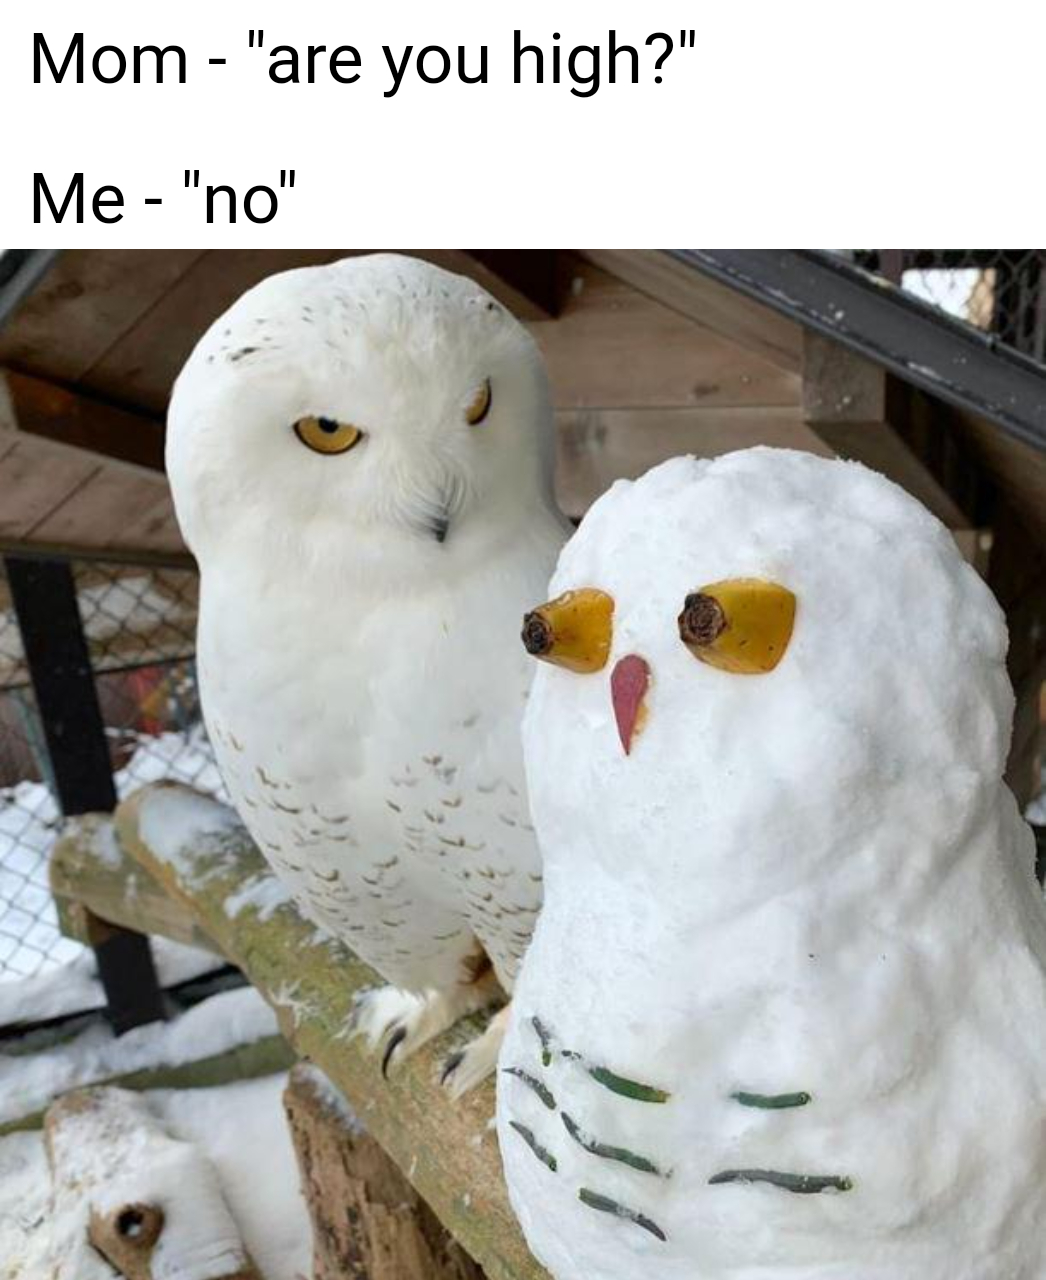 blursed owl - Mom "are you high?" Me "no"